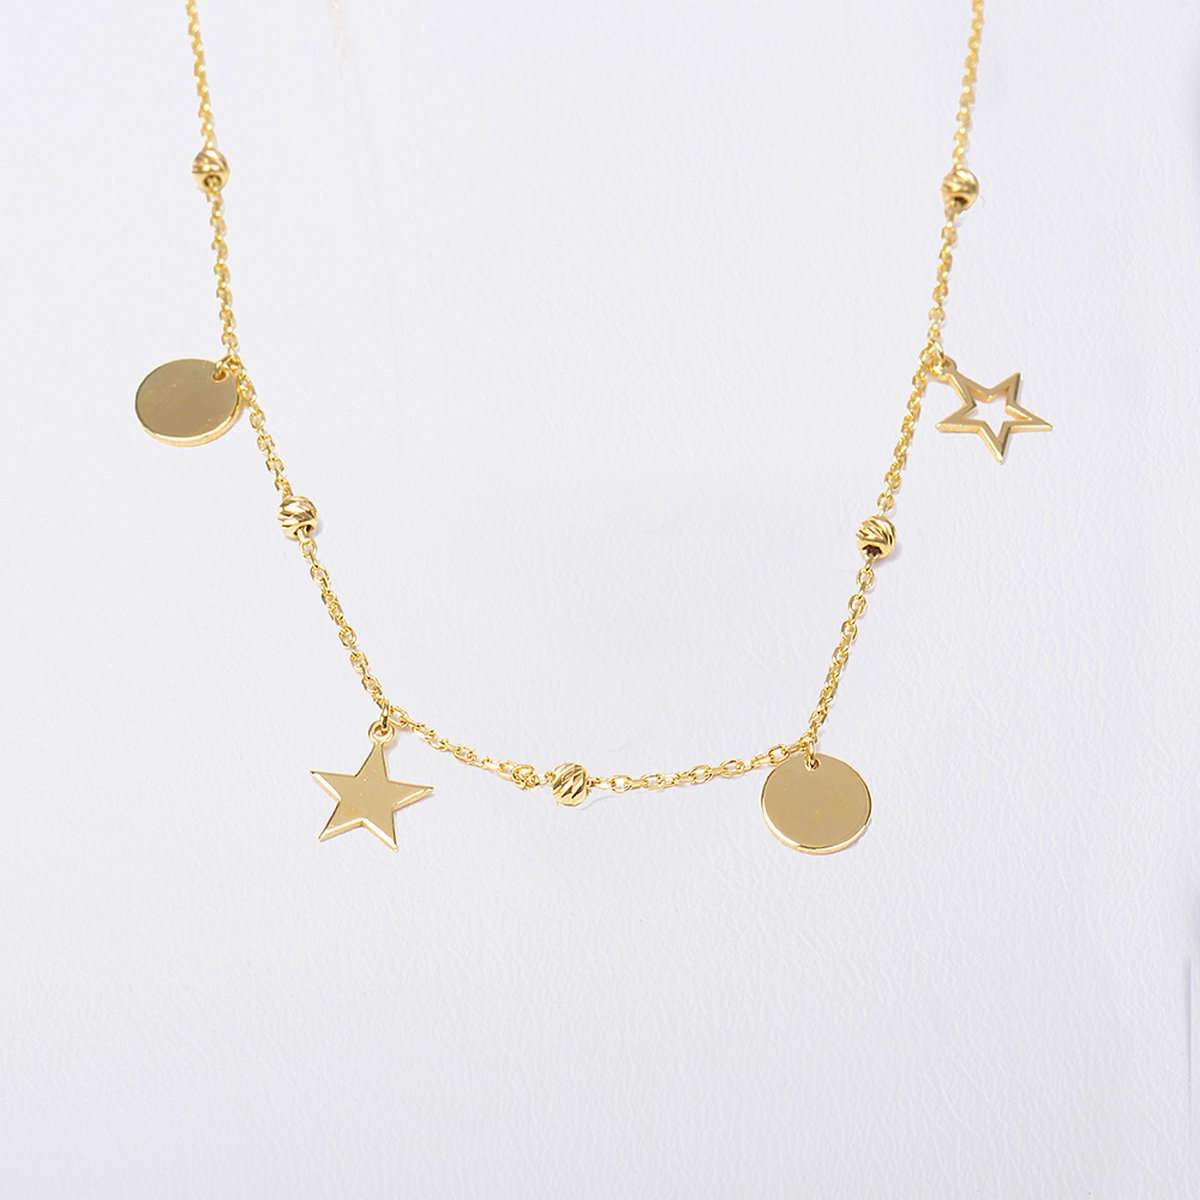 MeYuKu- Sieraden- 14 karaat gouden ketting met sterren en schijven kralen hangers